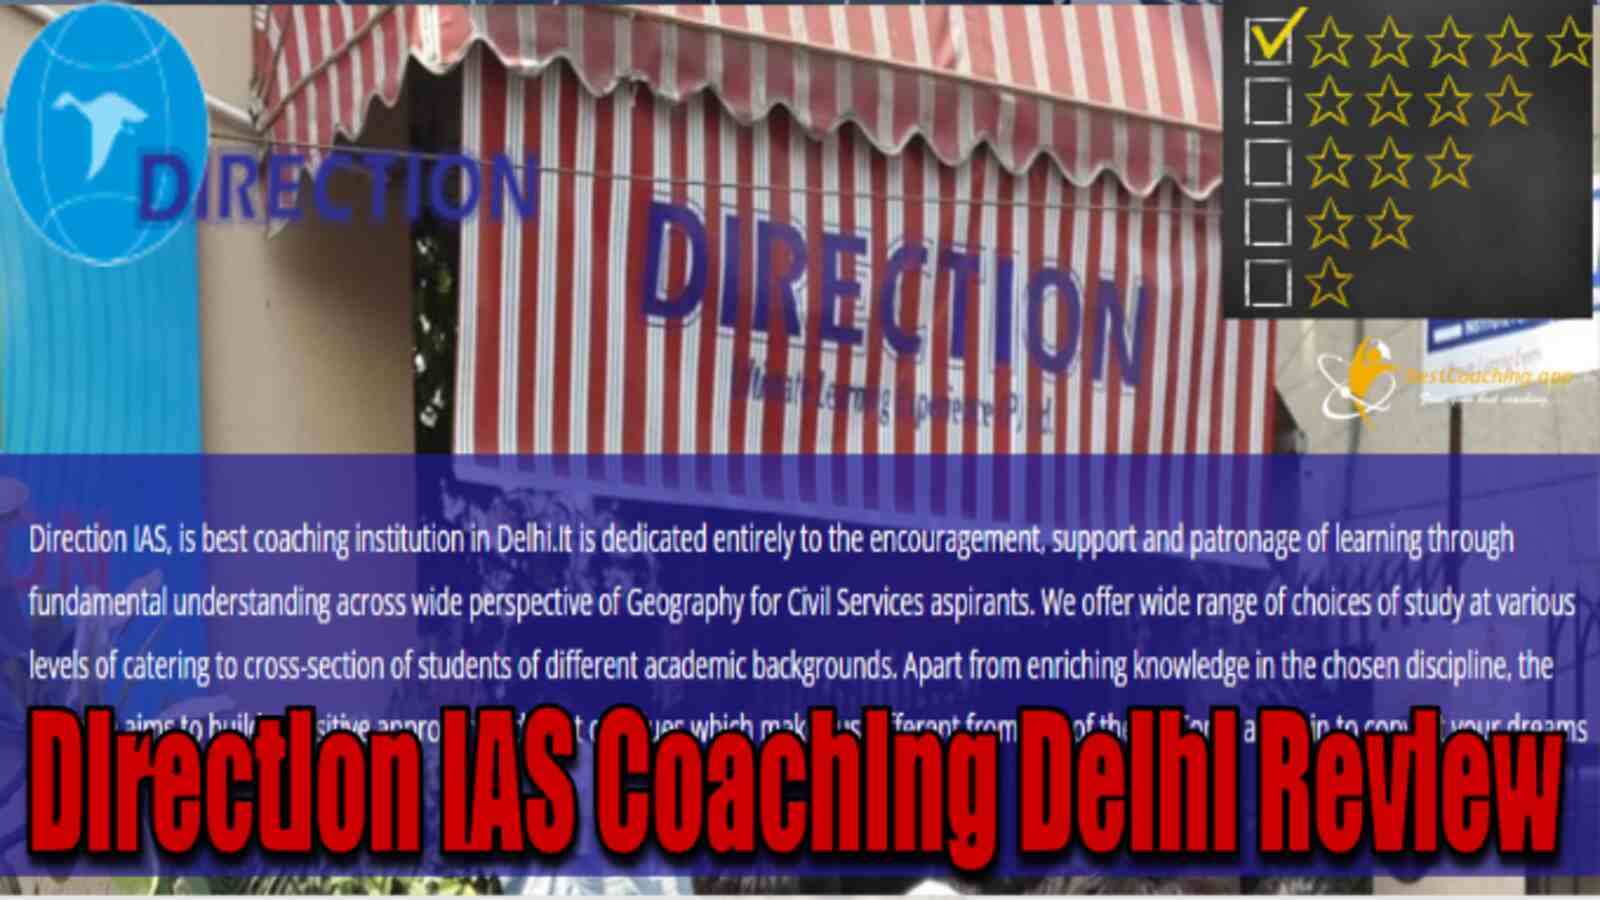 Direction IAS Coaching Delhi Review